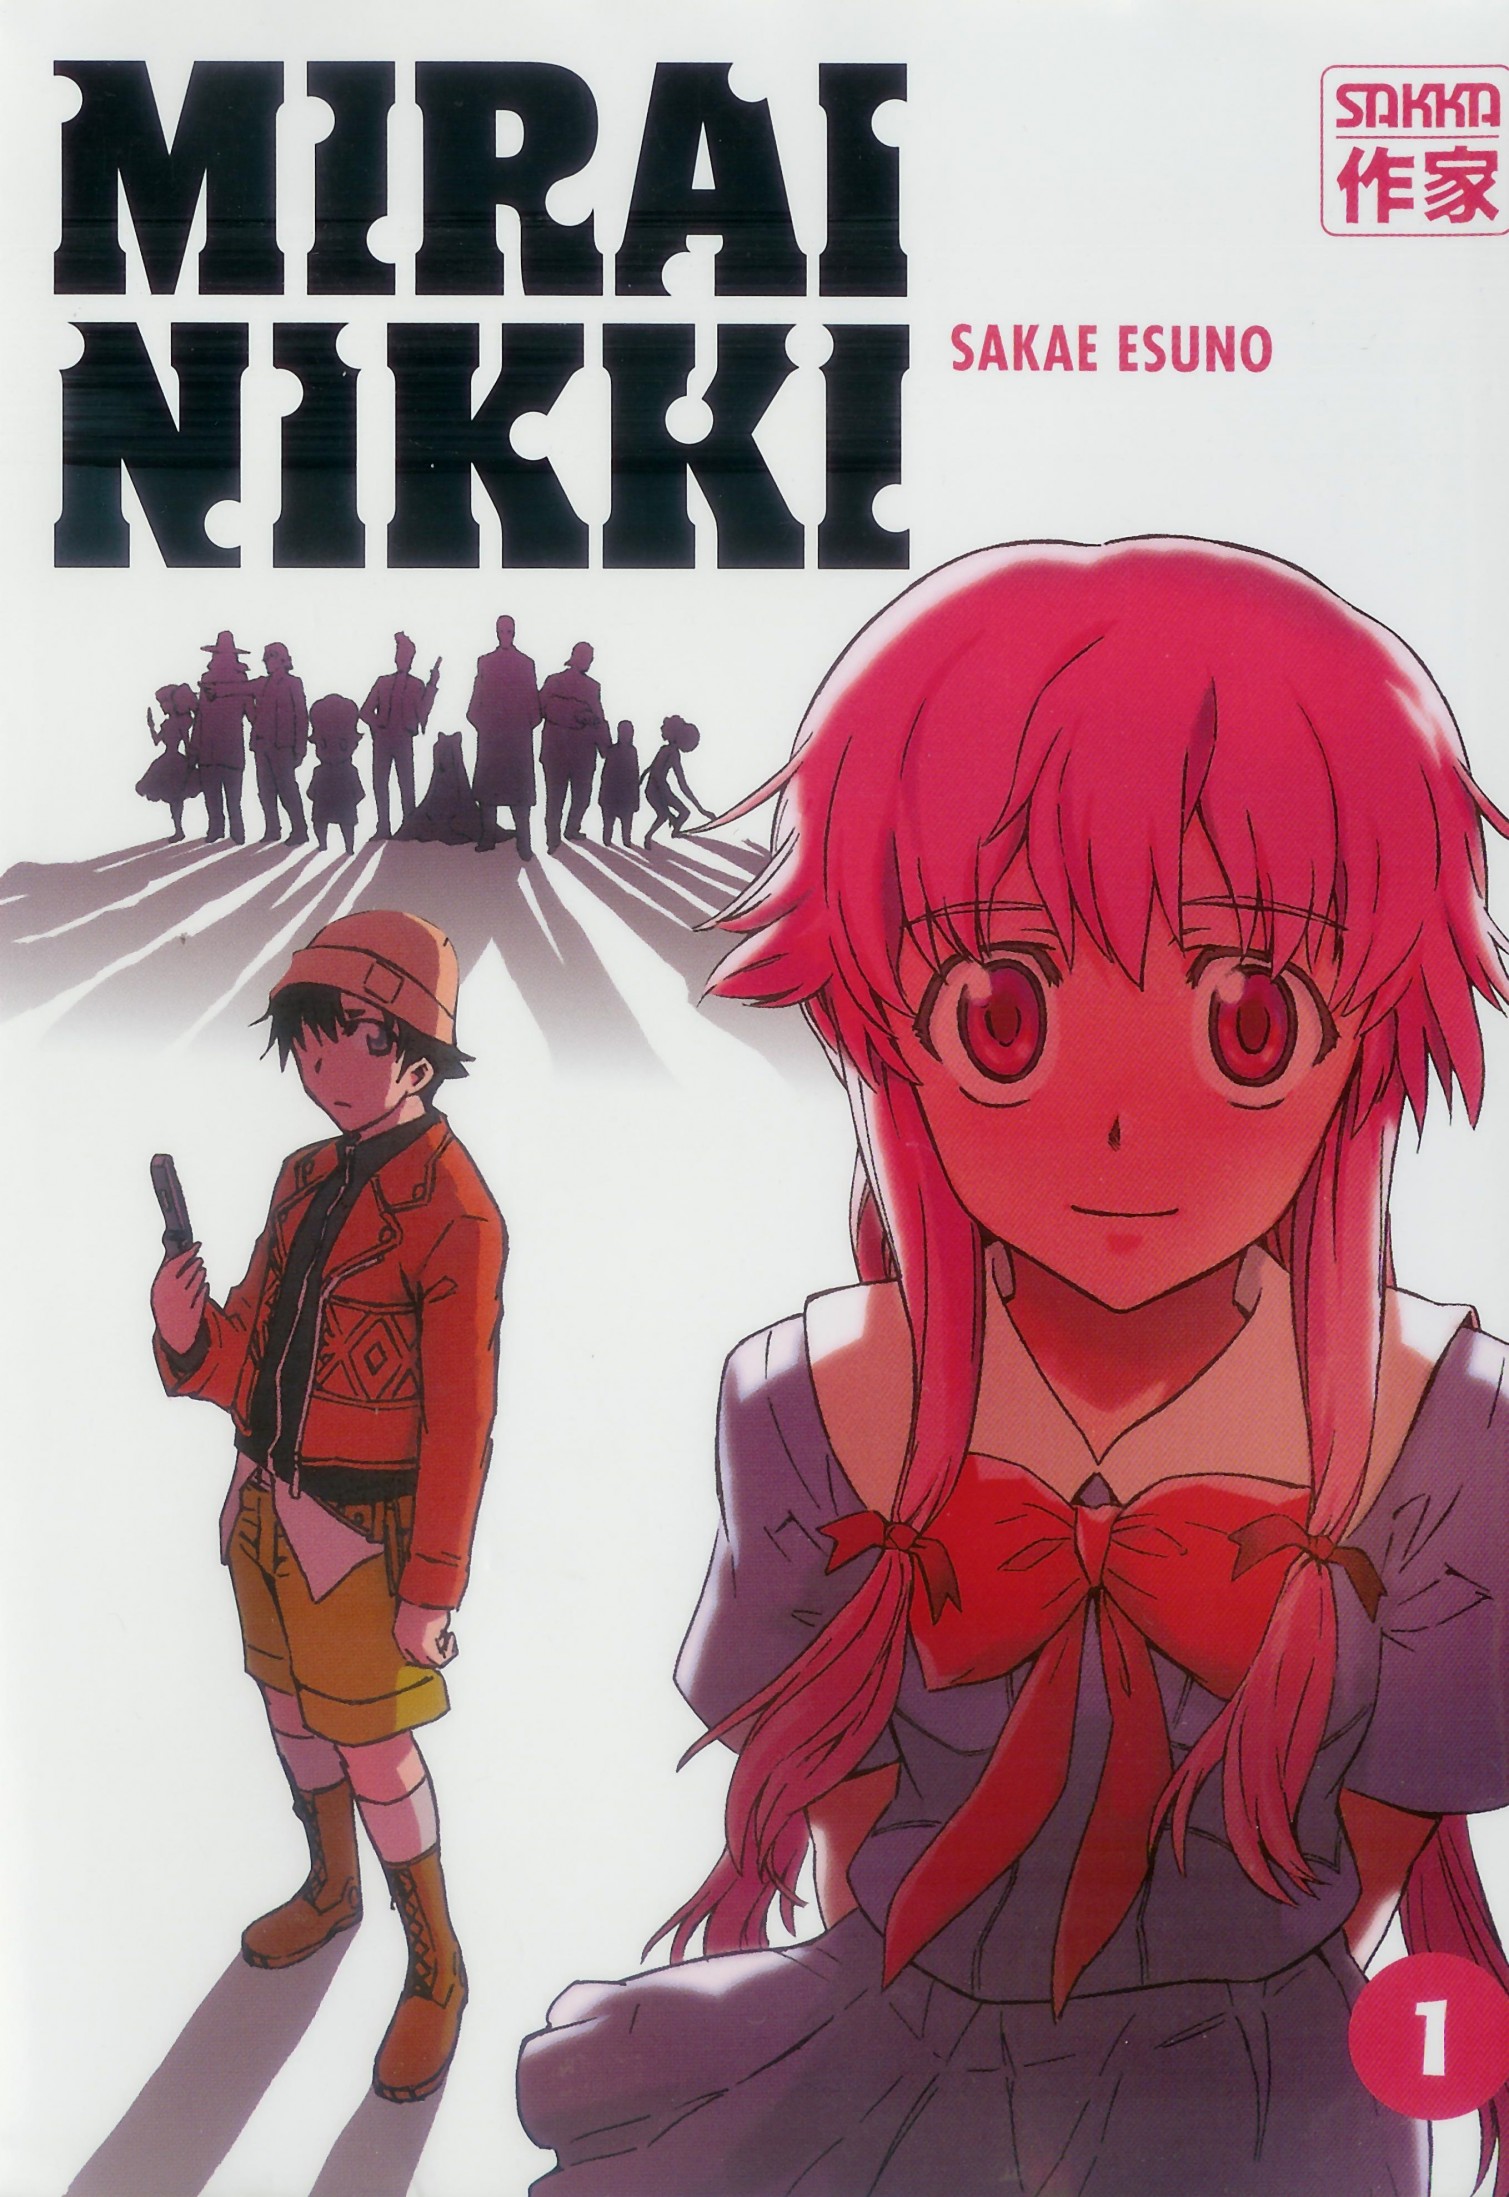 Anime Nikki - [ INFORMACIÓN ] Lista de animes más vistos